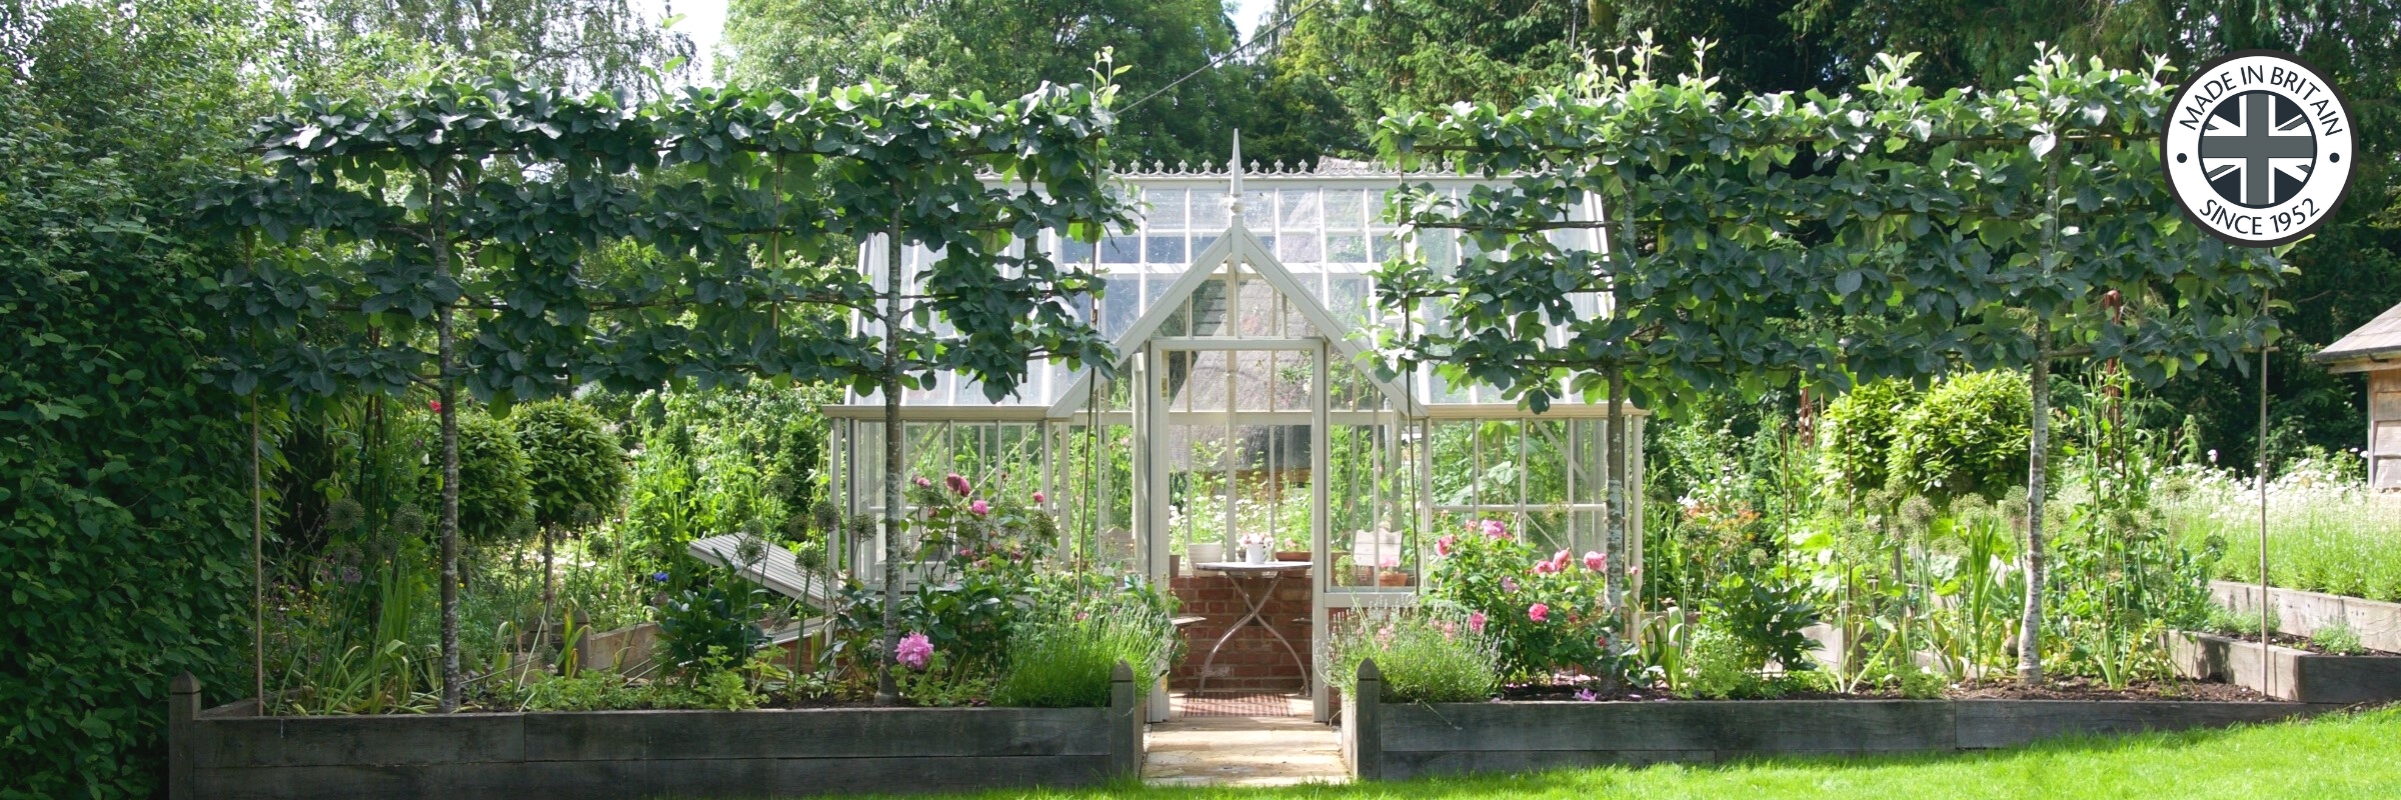 Englisches Gewächshaus im viktorianischen Stil für kleinere Gärten.